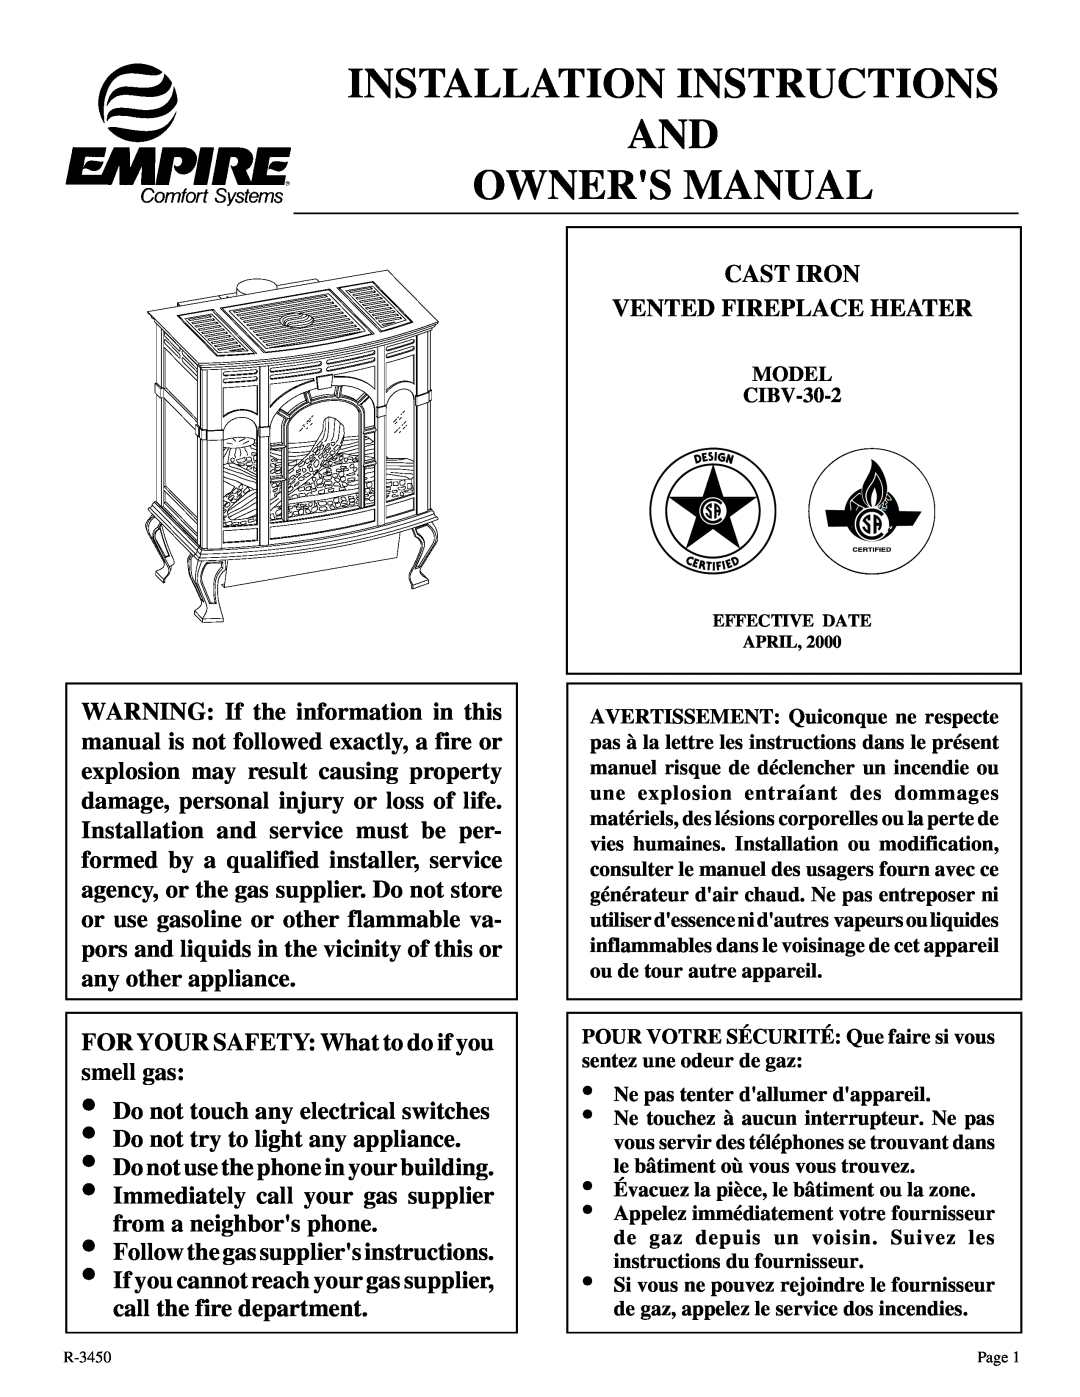 Empire Comfort Systems CIBV-30-2 installation instructions 